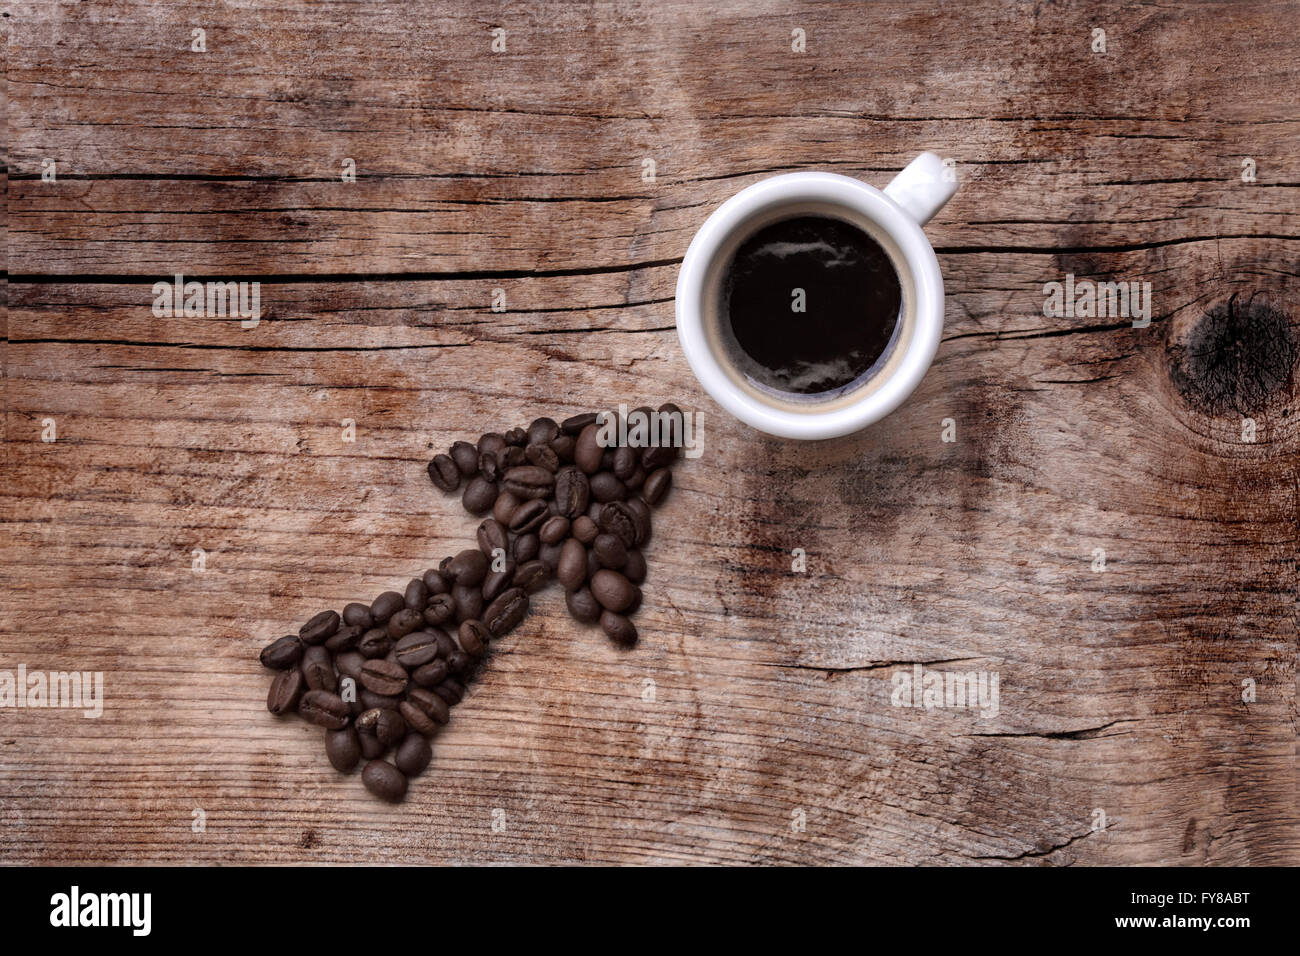 Les grains de café de flèche pointant sur une tasse de café, le tout sur une vieille planche de bois, modèle diagonal Banque D'Images